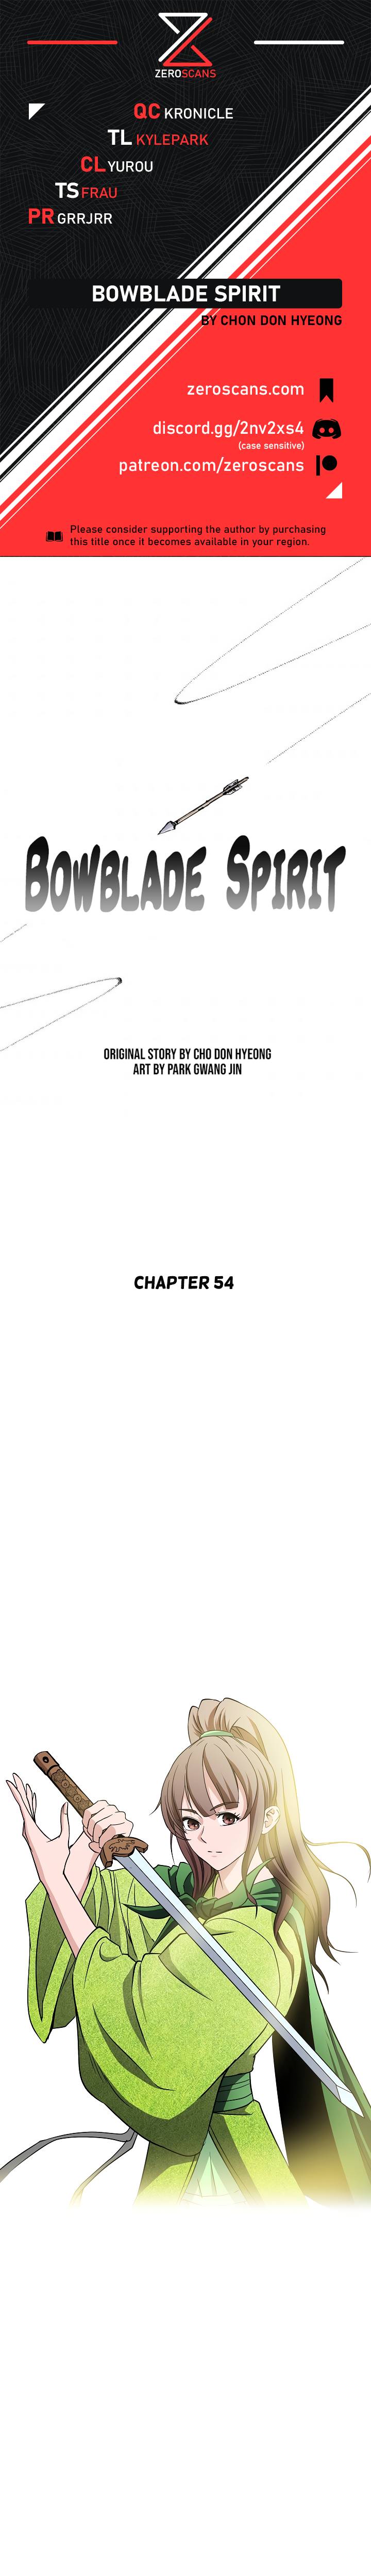 Bowblade Spirit - Chapter 54 Page 1